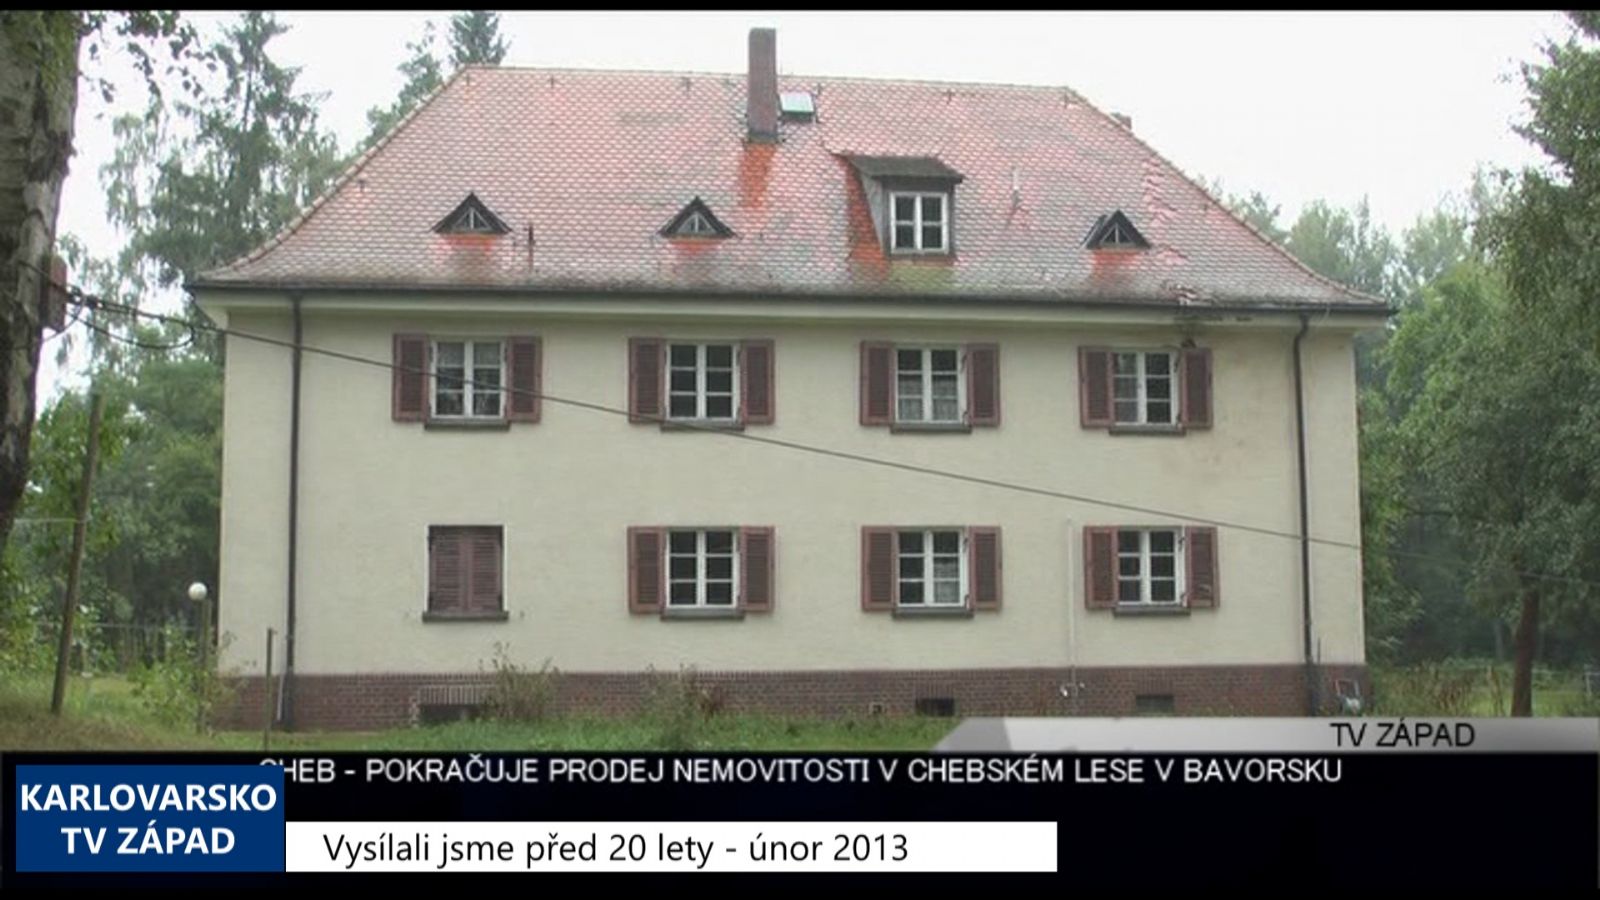 2013 – Cheb: Pokračuje prodej hájenky v chebském lese v Bavorsku 4898 (TV Západ)